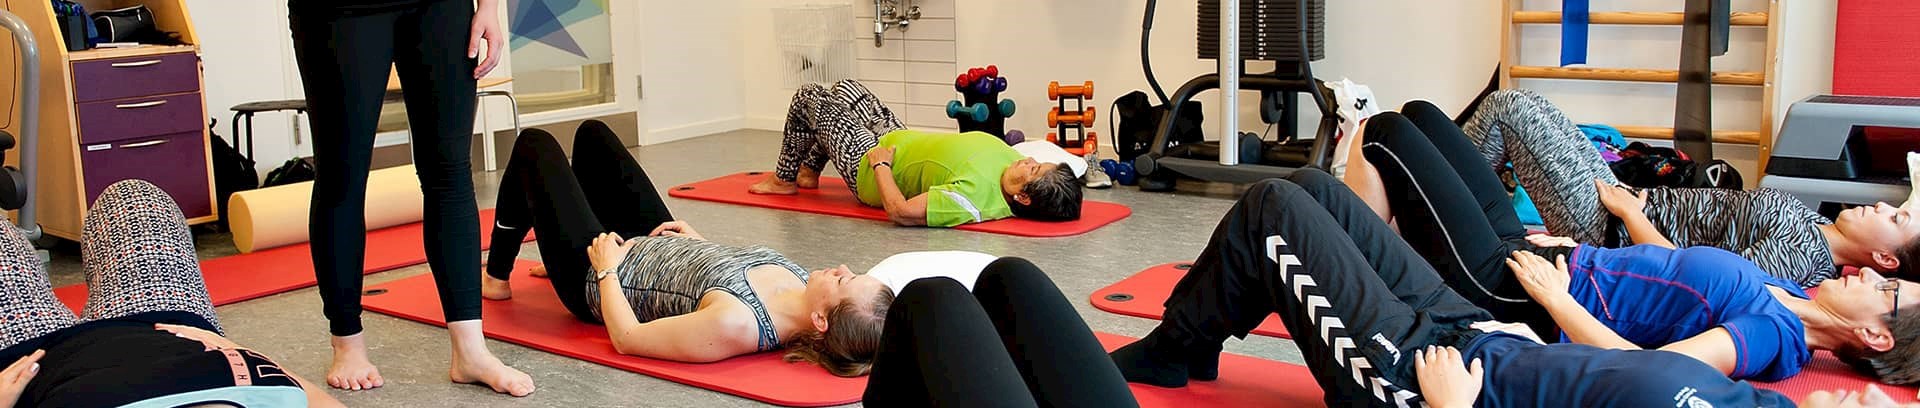 Mærk din krop, bevægelseskursus ved FOF Aarhus, underviser Martha Lundgaard